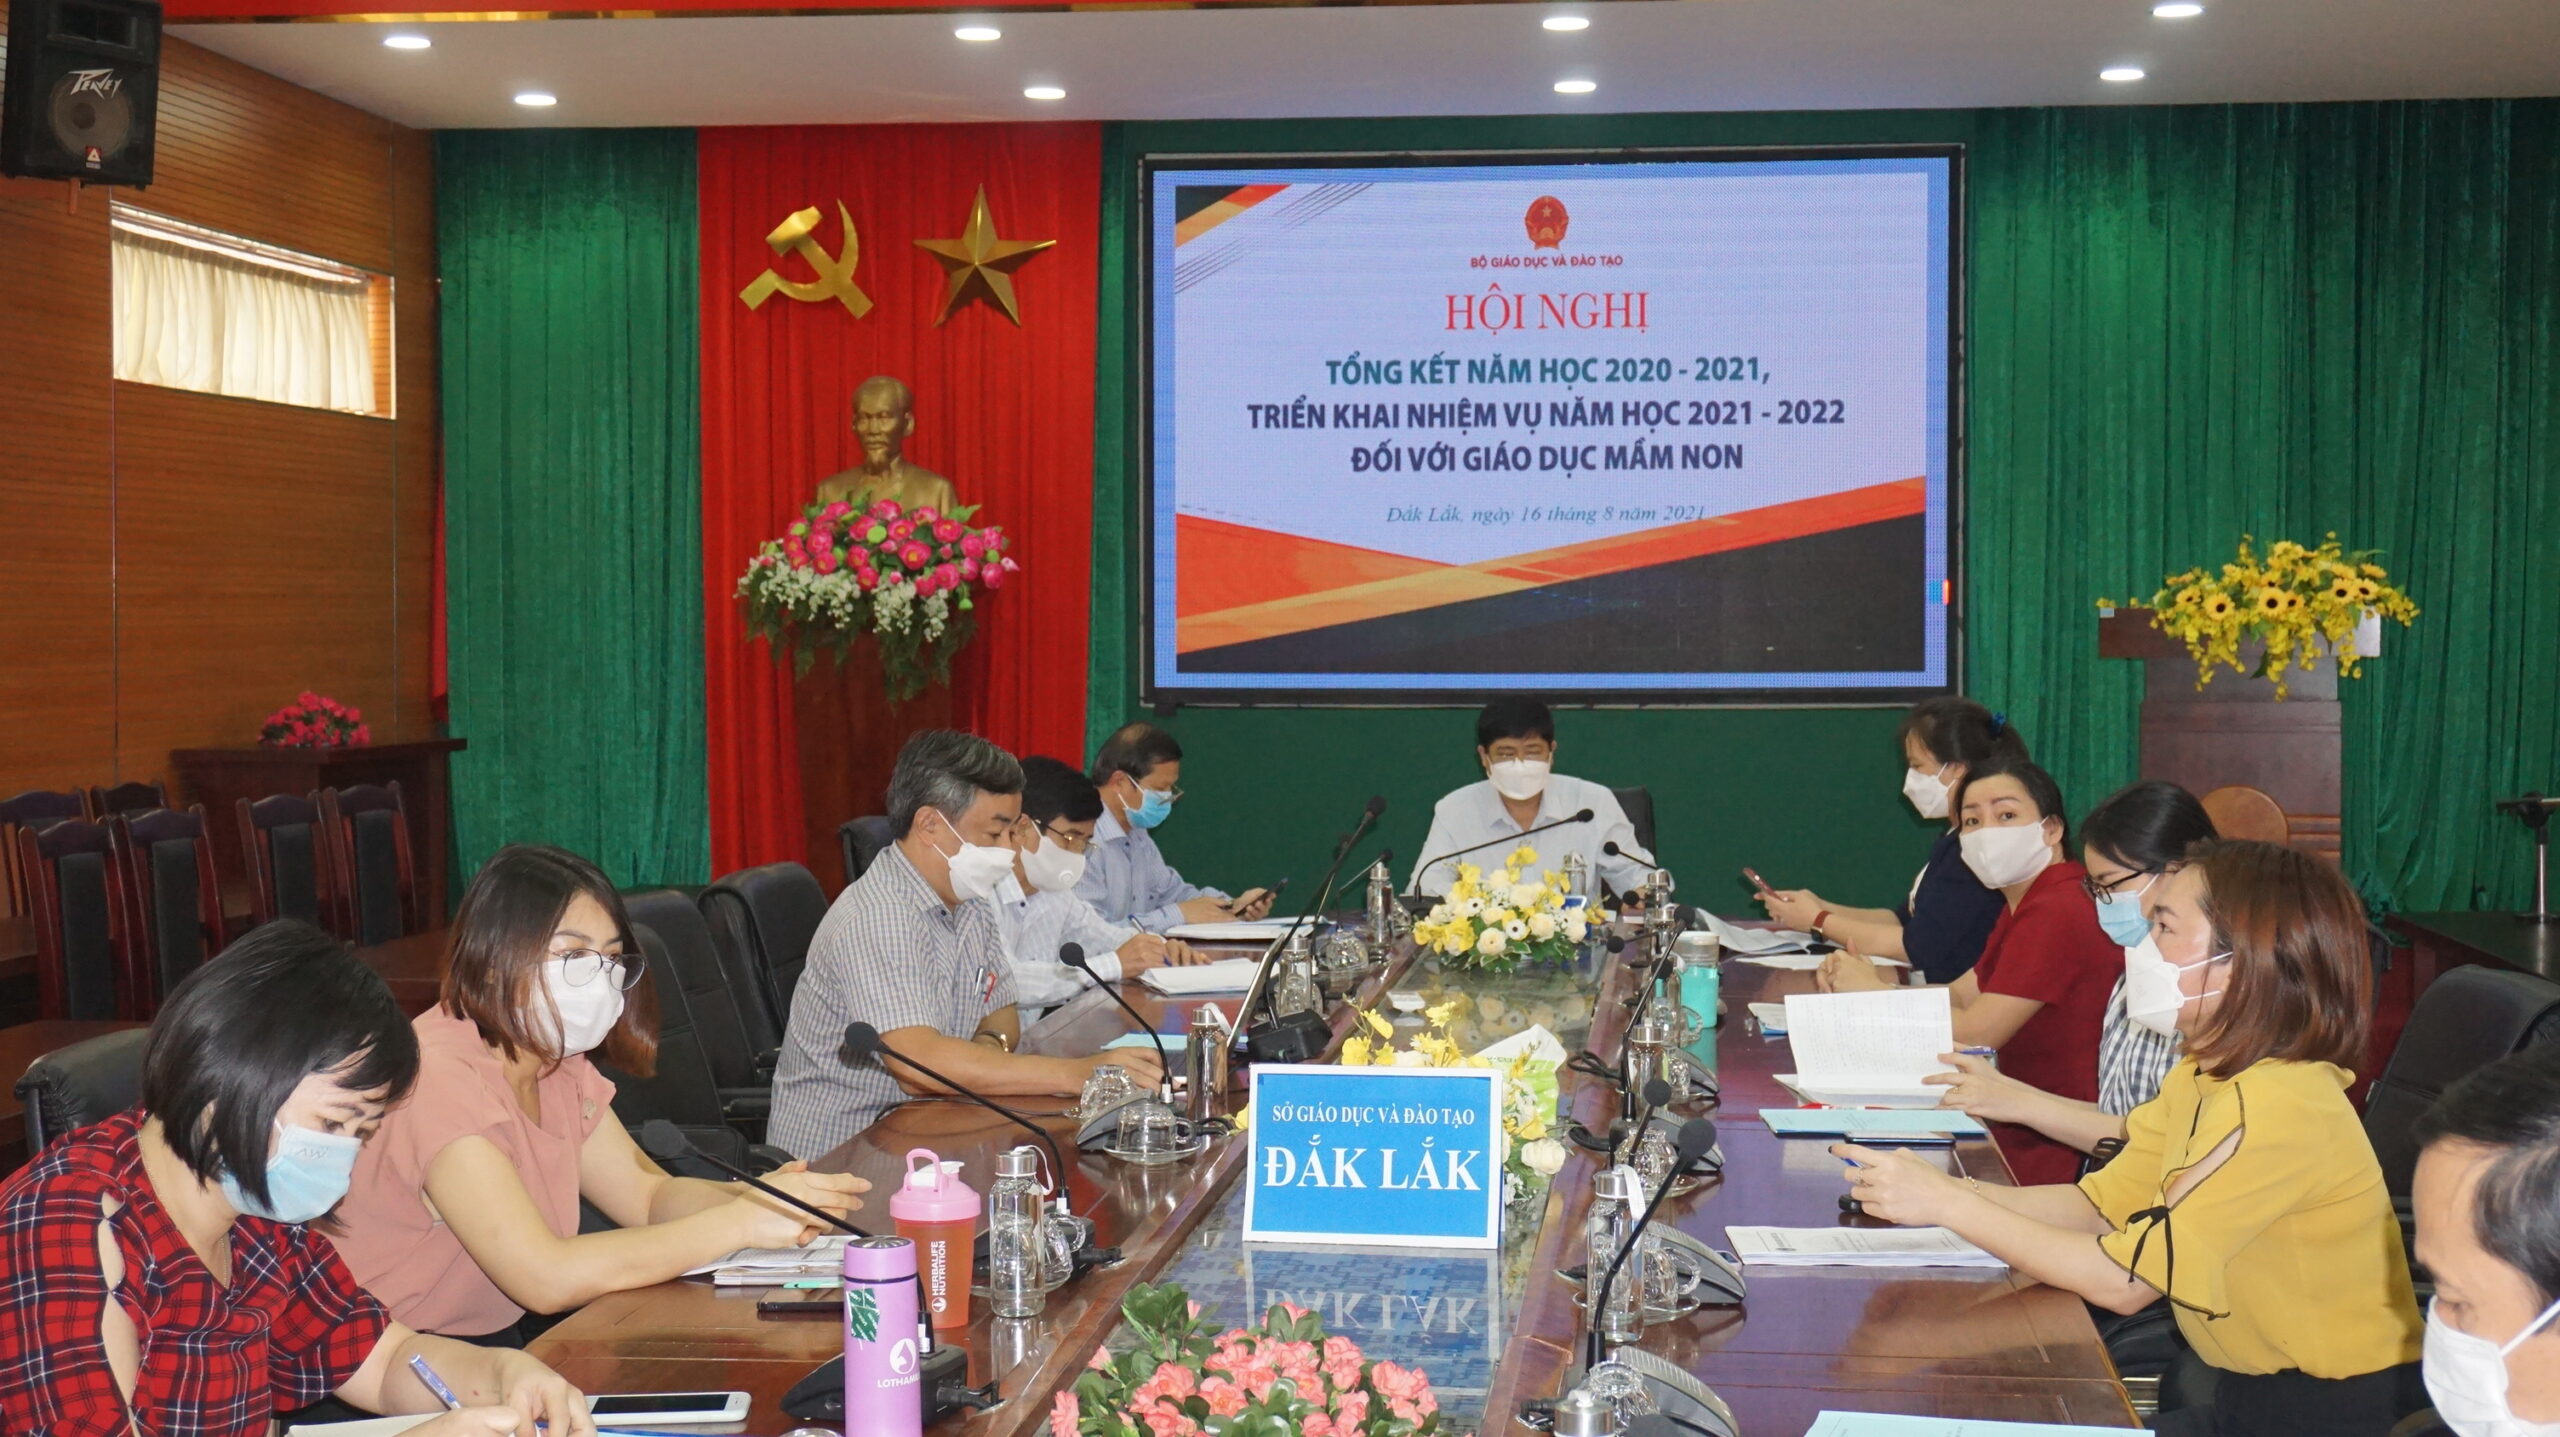 Giám đốc Sở GD&ĐT Phạm Đăng Khoa cùng các đại biểu tham dự Hội nghị tại điểm cầu Sở GD&ĐT Đắk Lắk